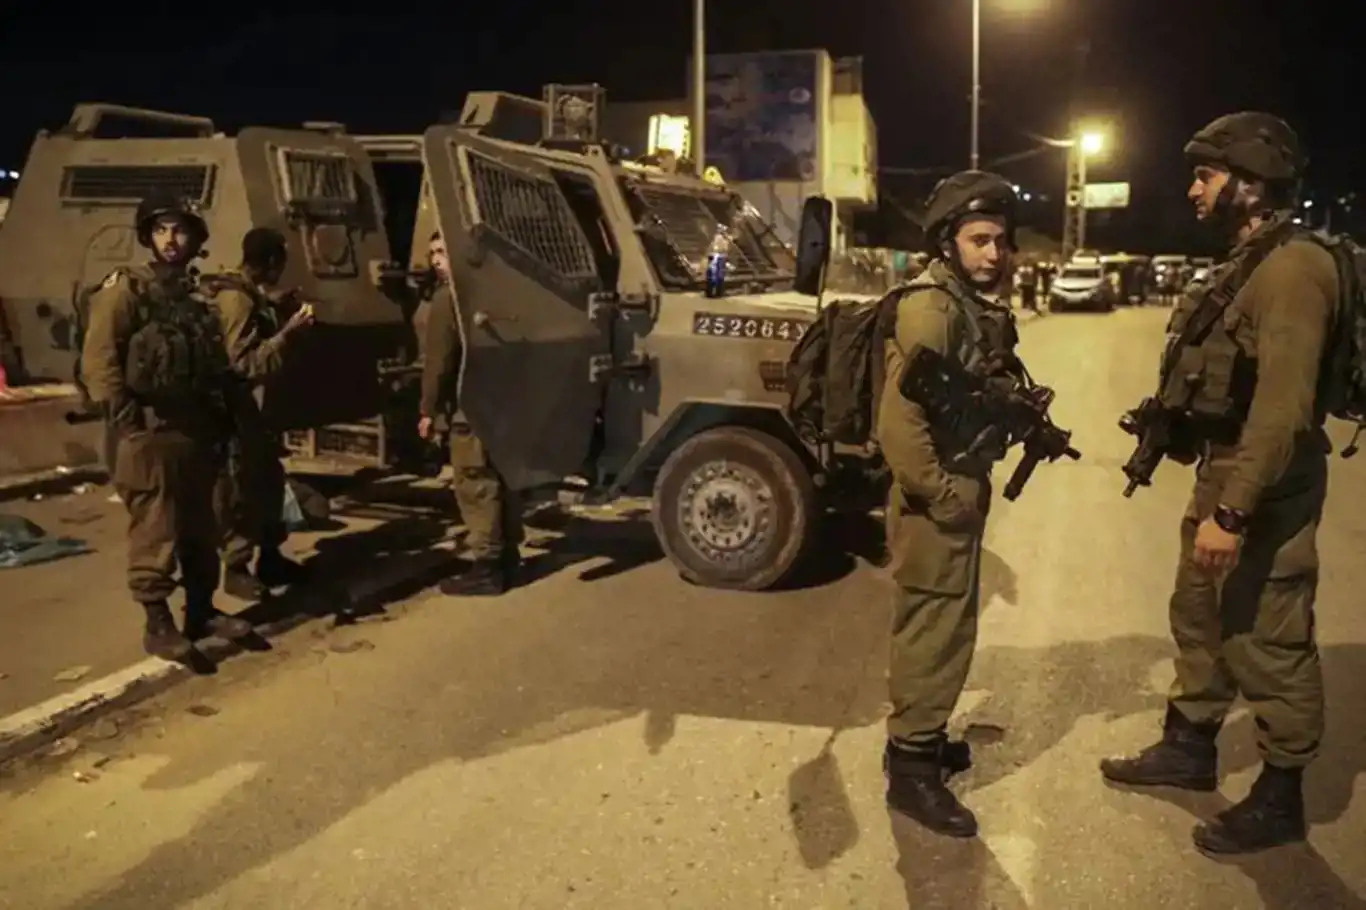 Siyonist işgal rejimi 55 Filistinliyi alıkoydu